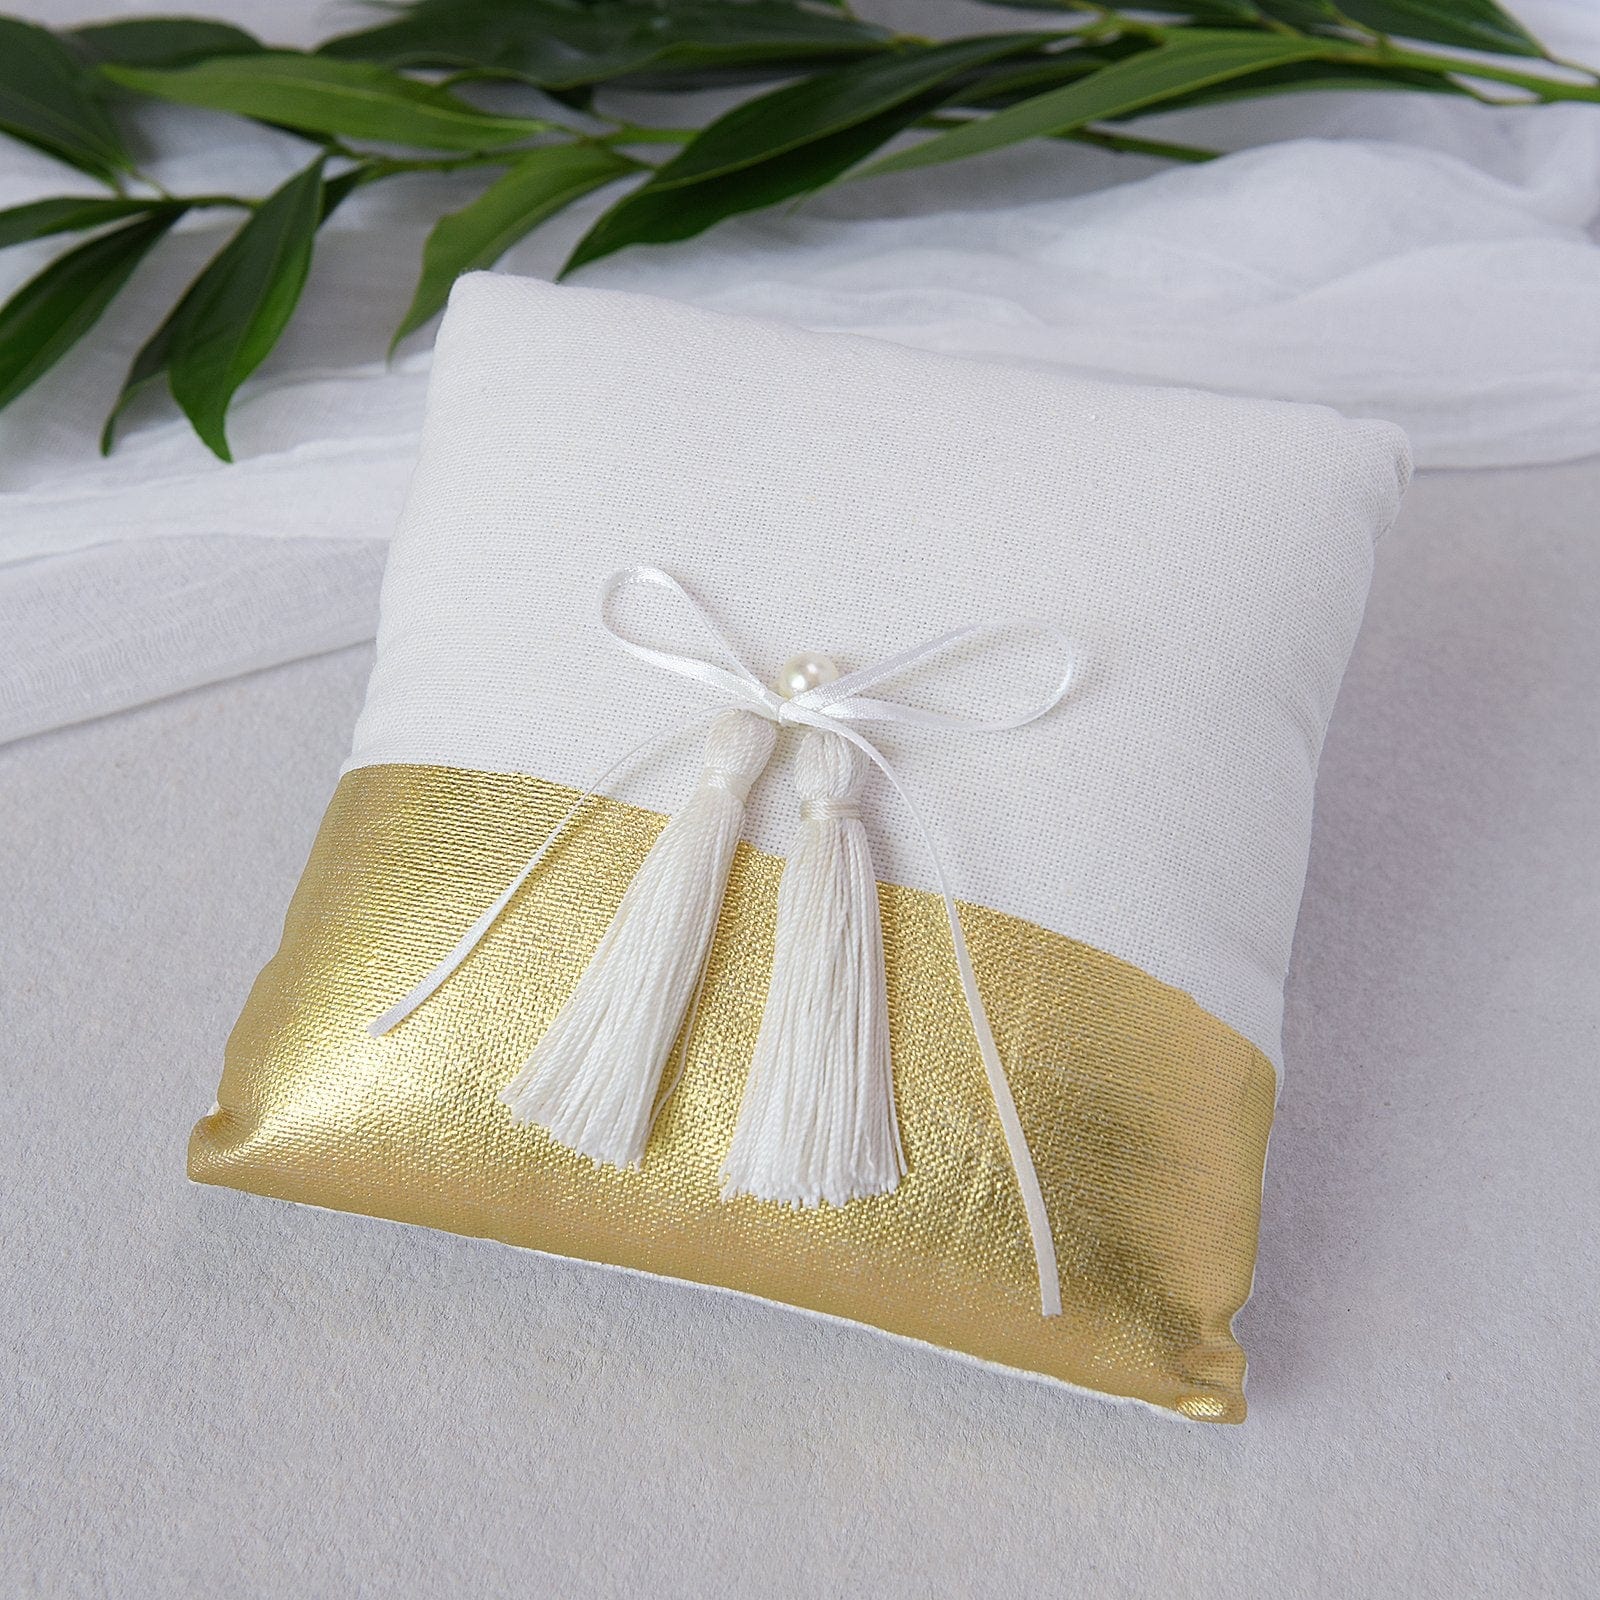 Gold Dipped Ring Bearer Pillow | Style Me Pretty - Gartner Studios